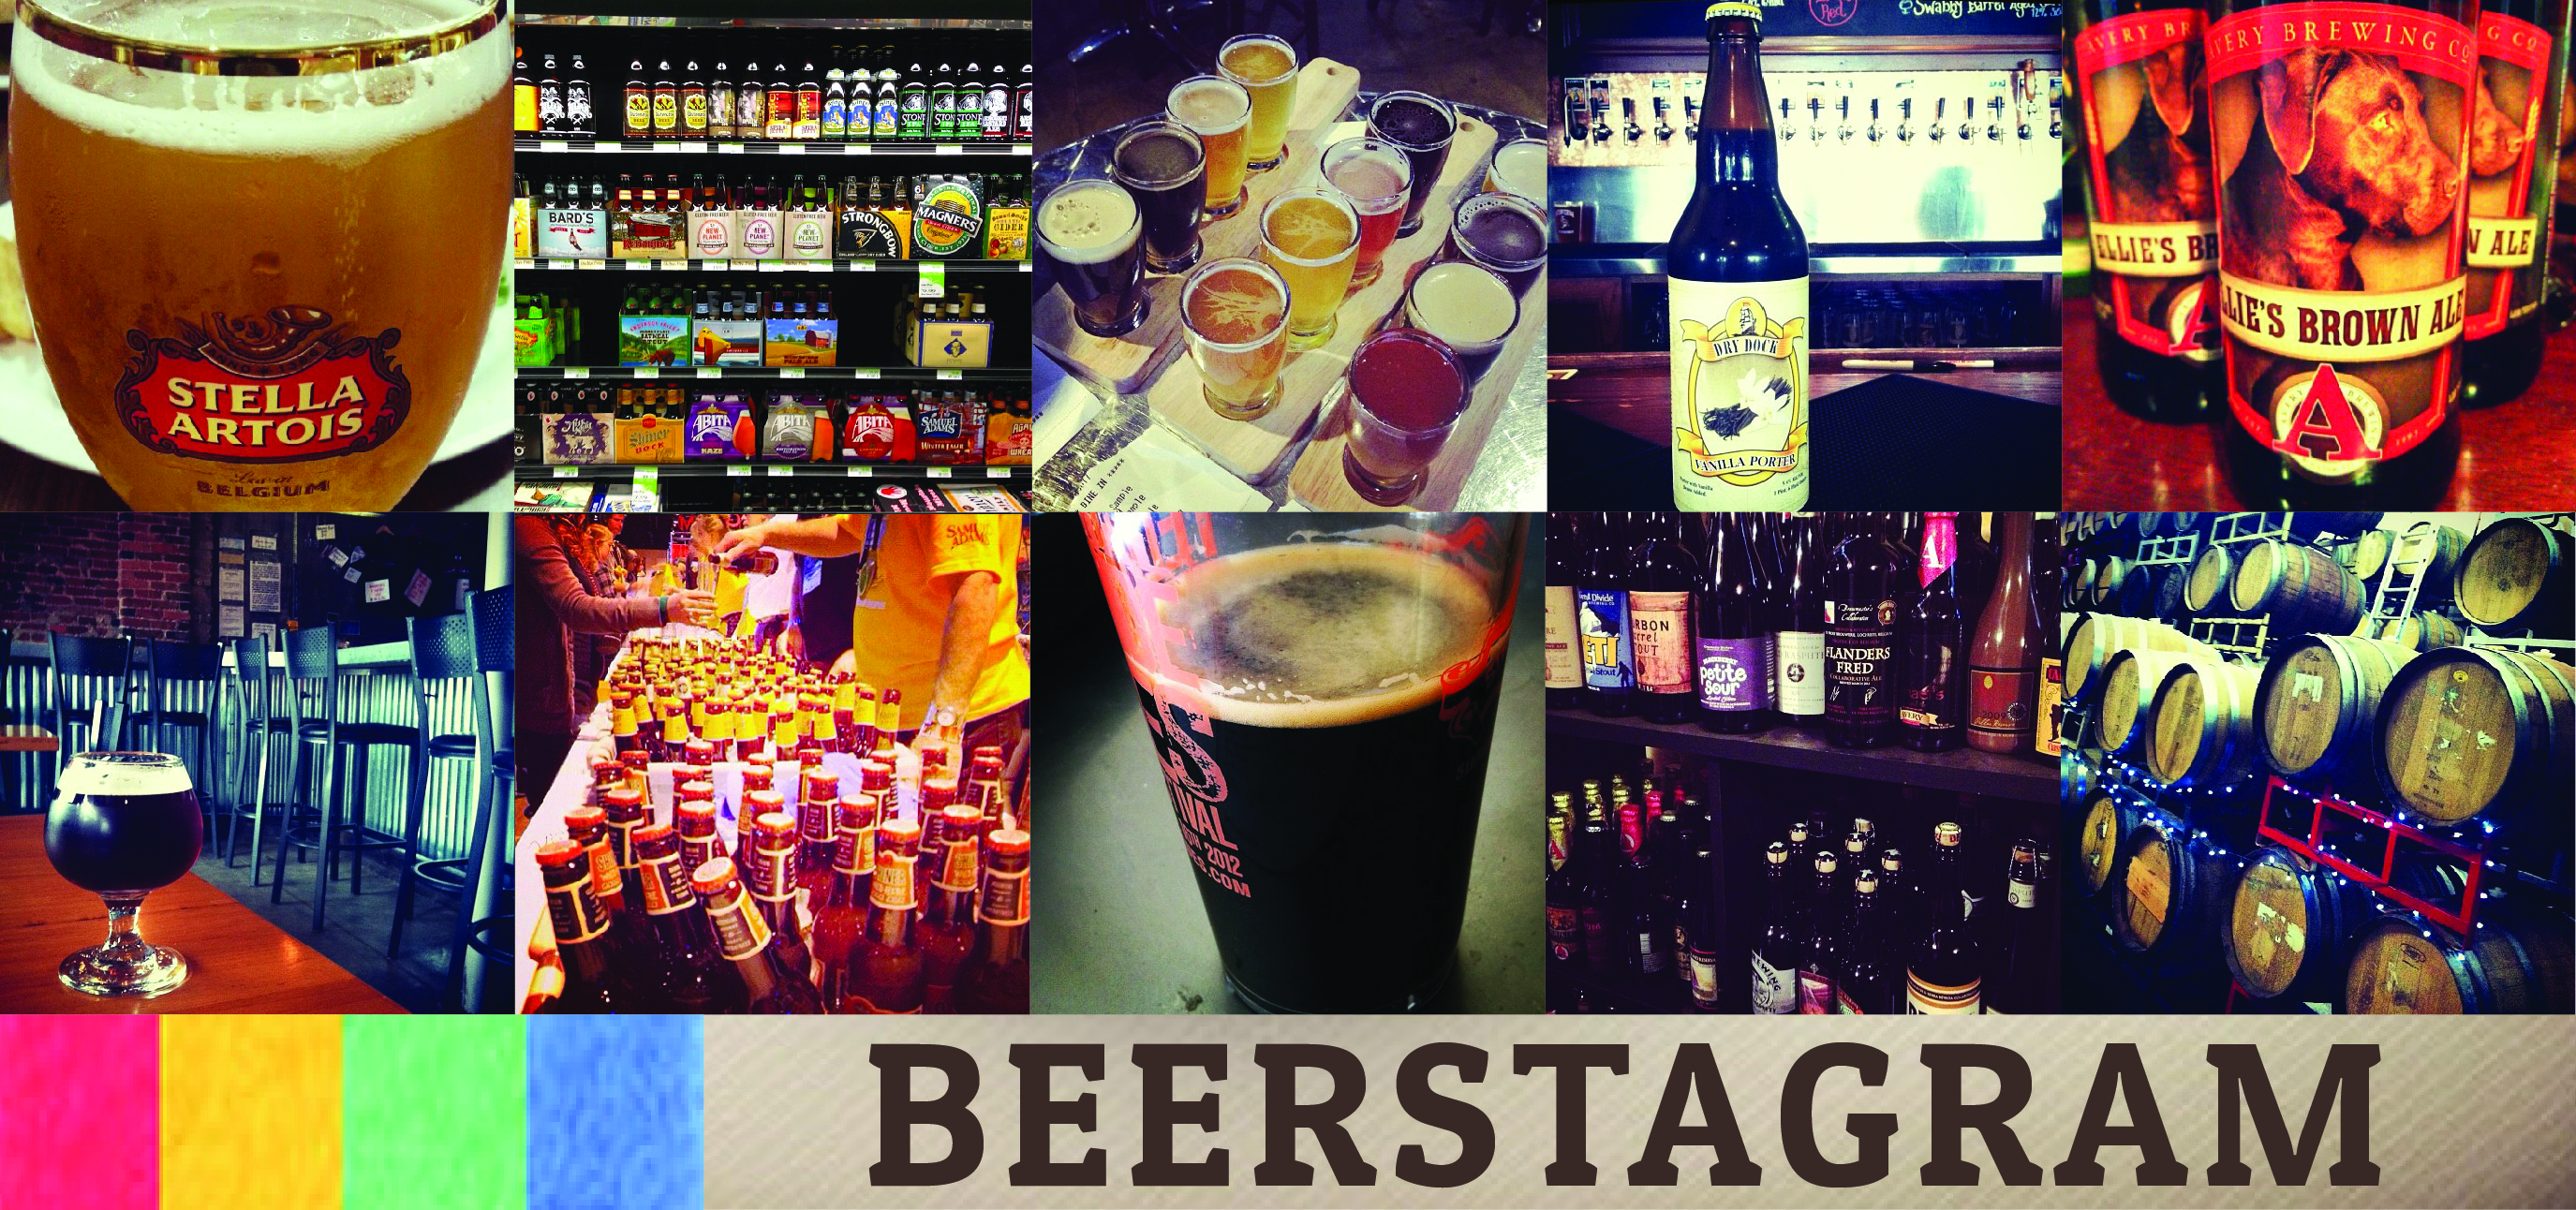 Beerstagram 5/3-5/10